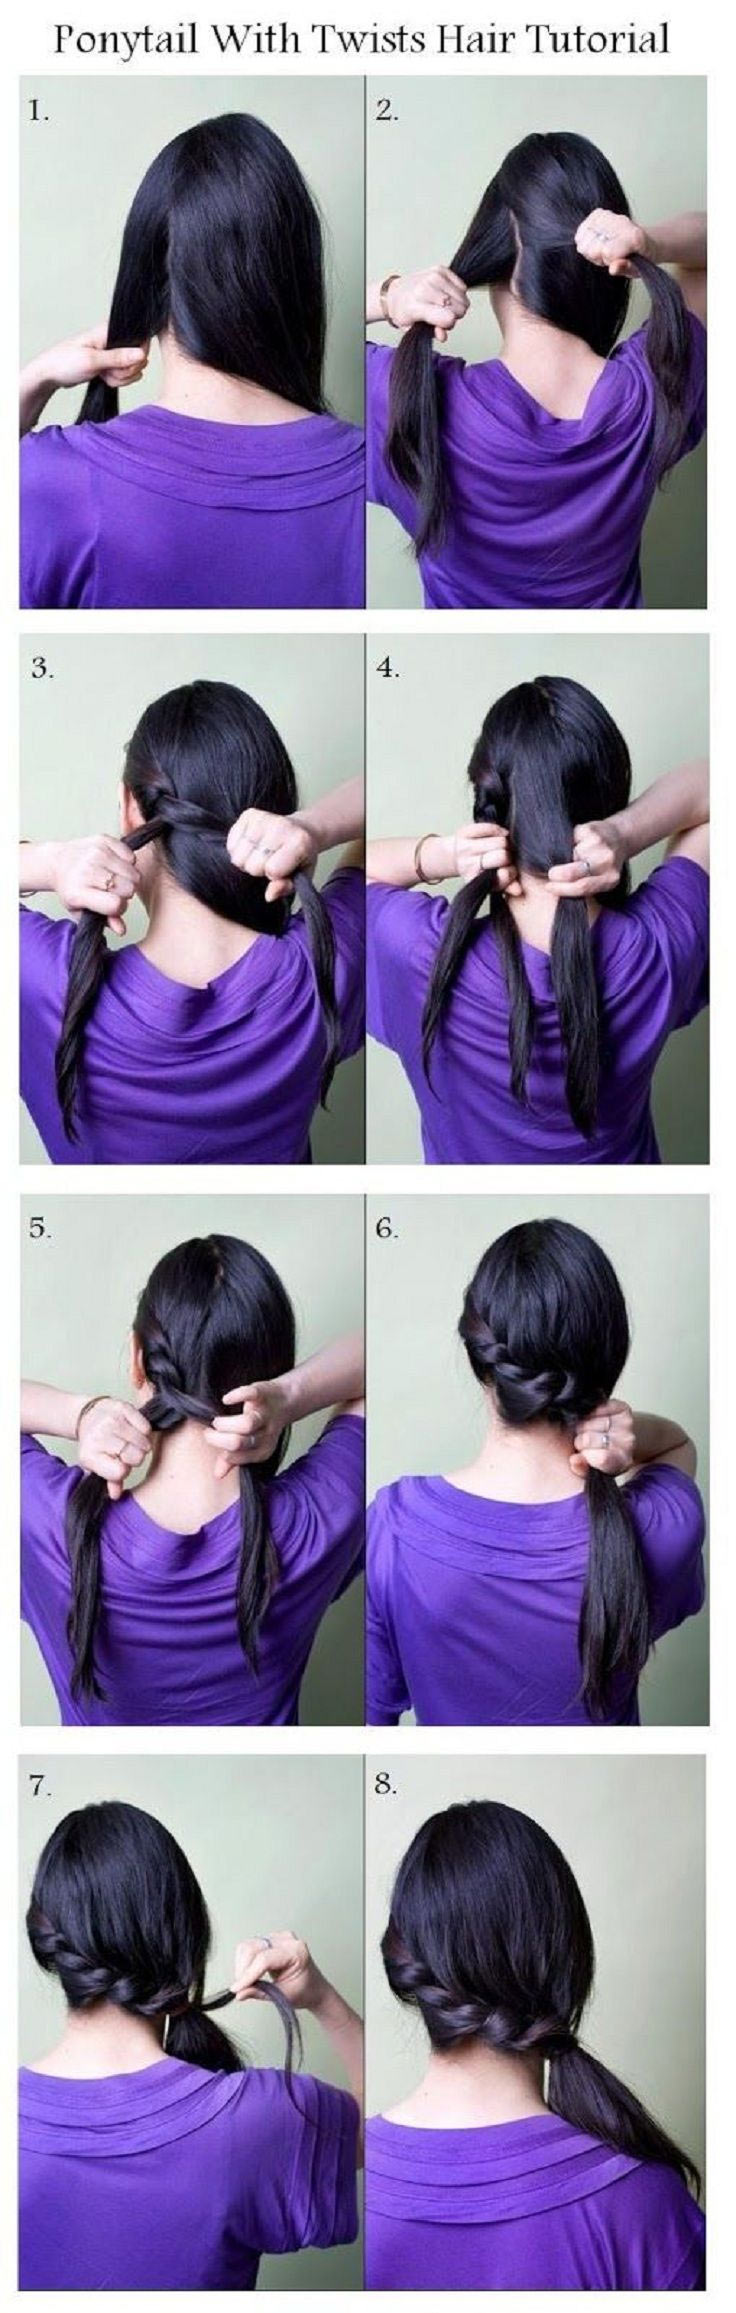 Hairstyle tutorials for this fall DIY long hair braid